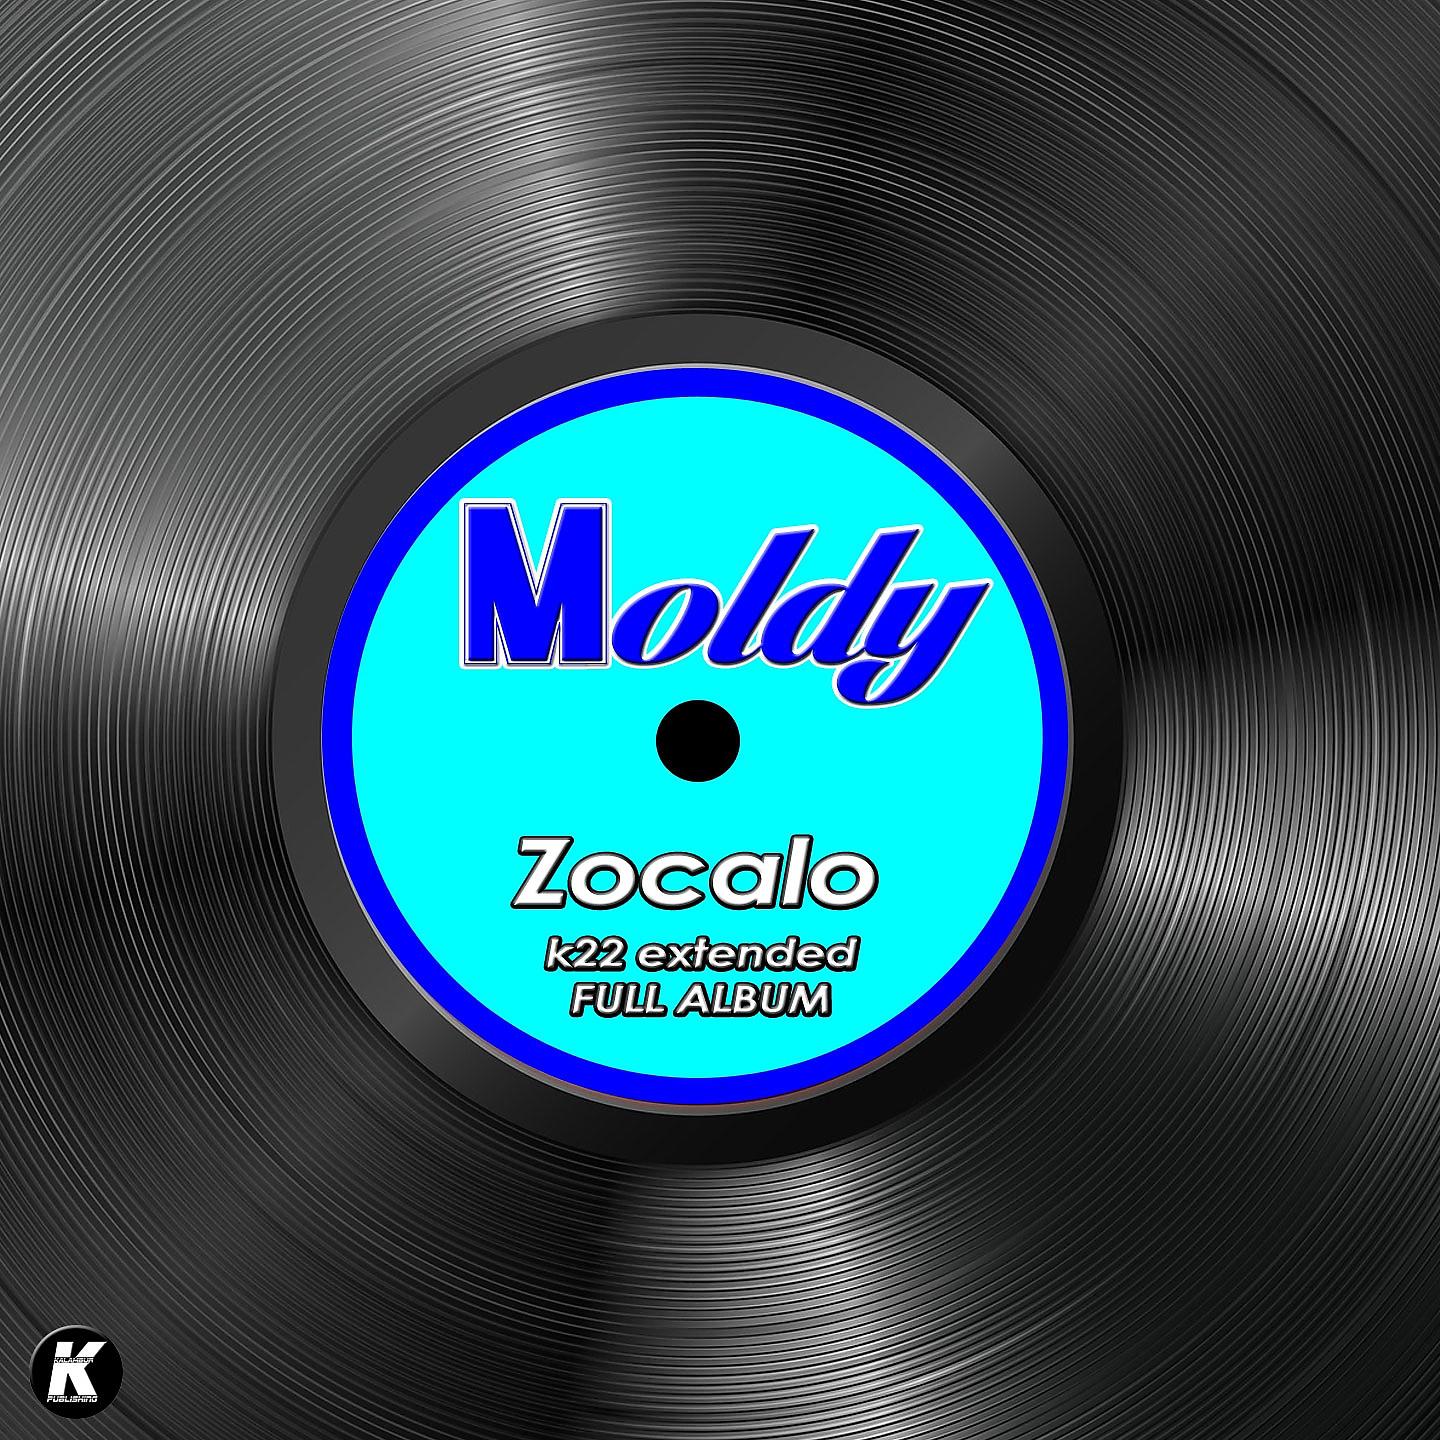 Постер альбома ZOCALO k22 extended full album